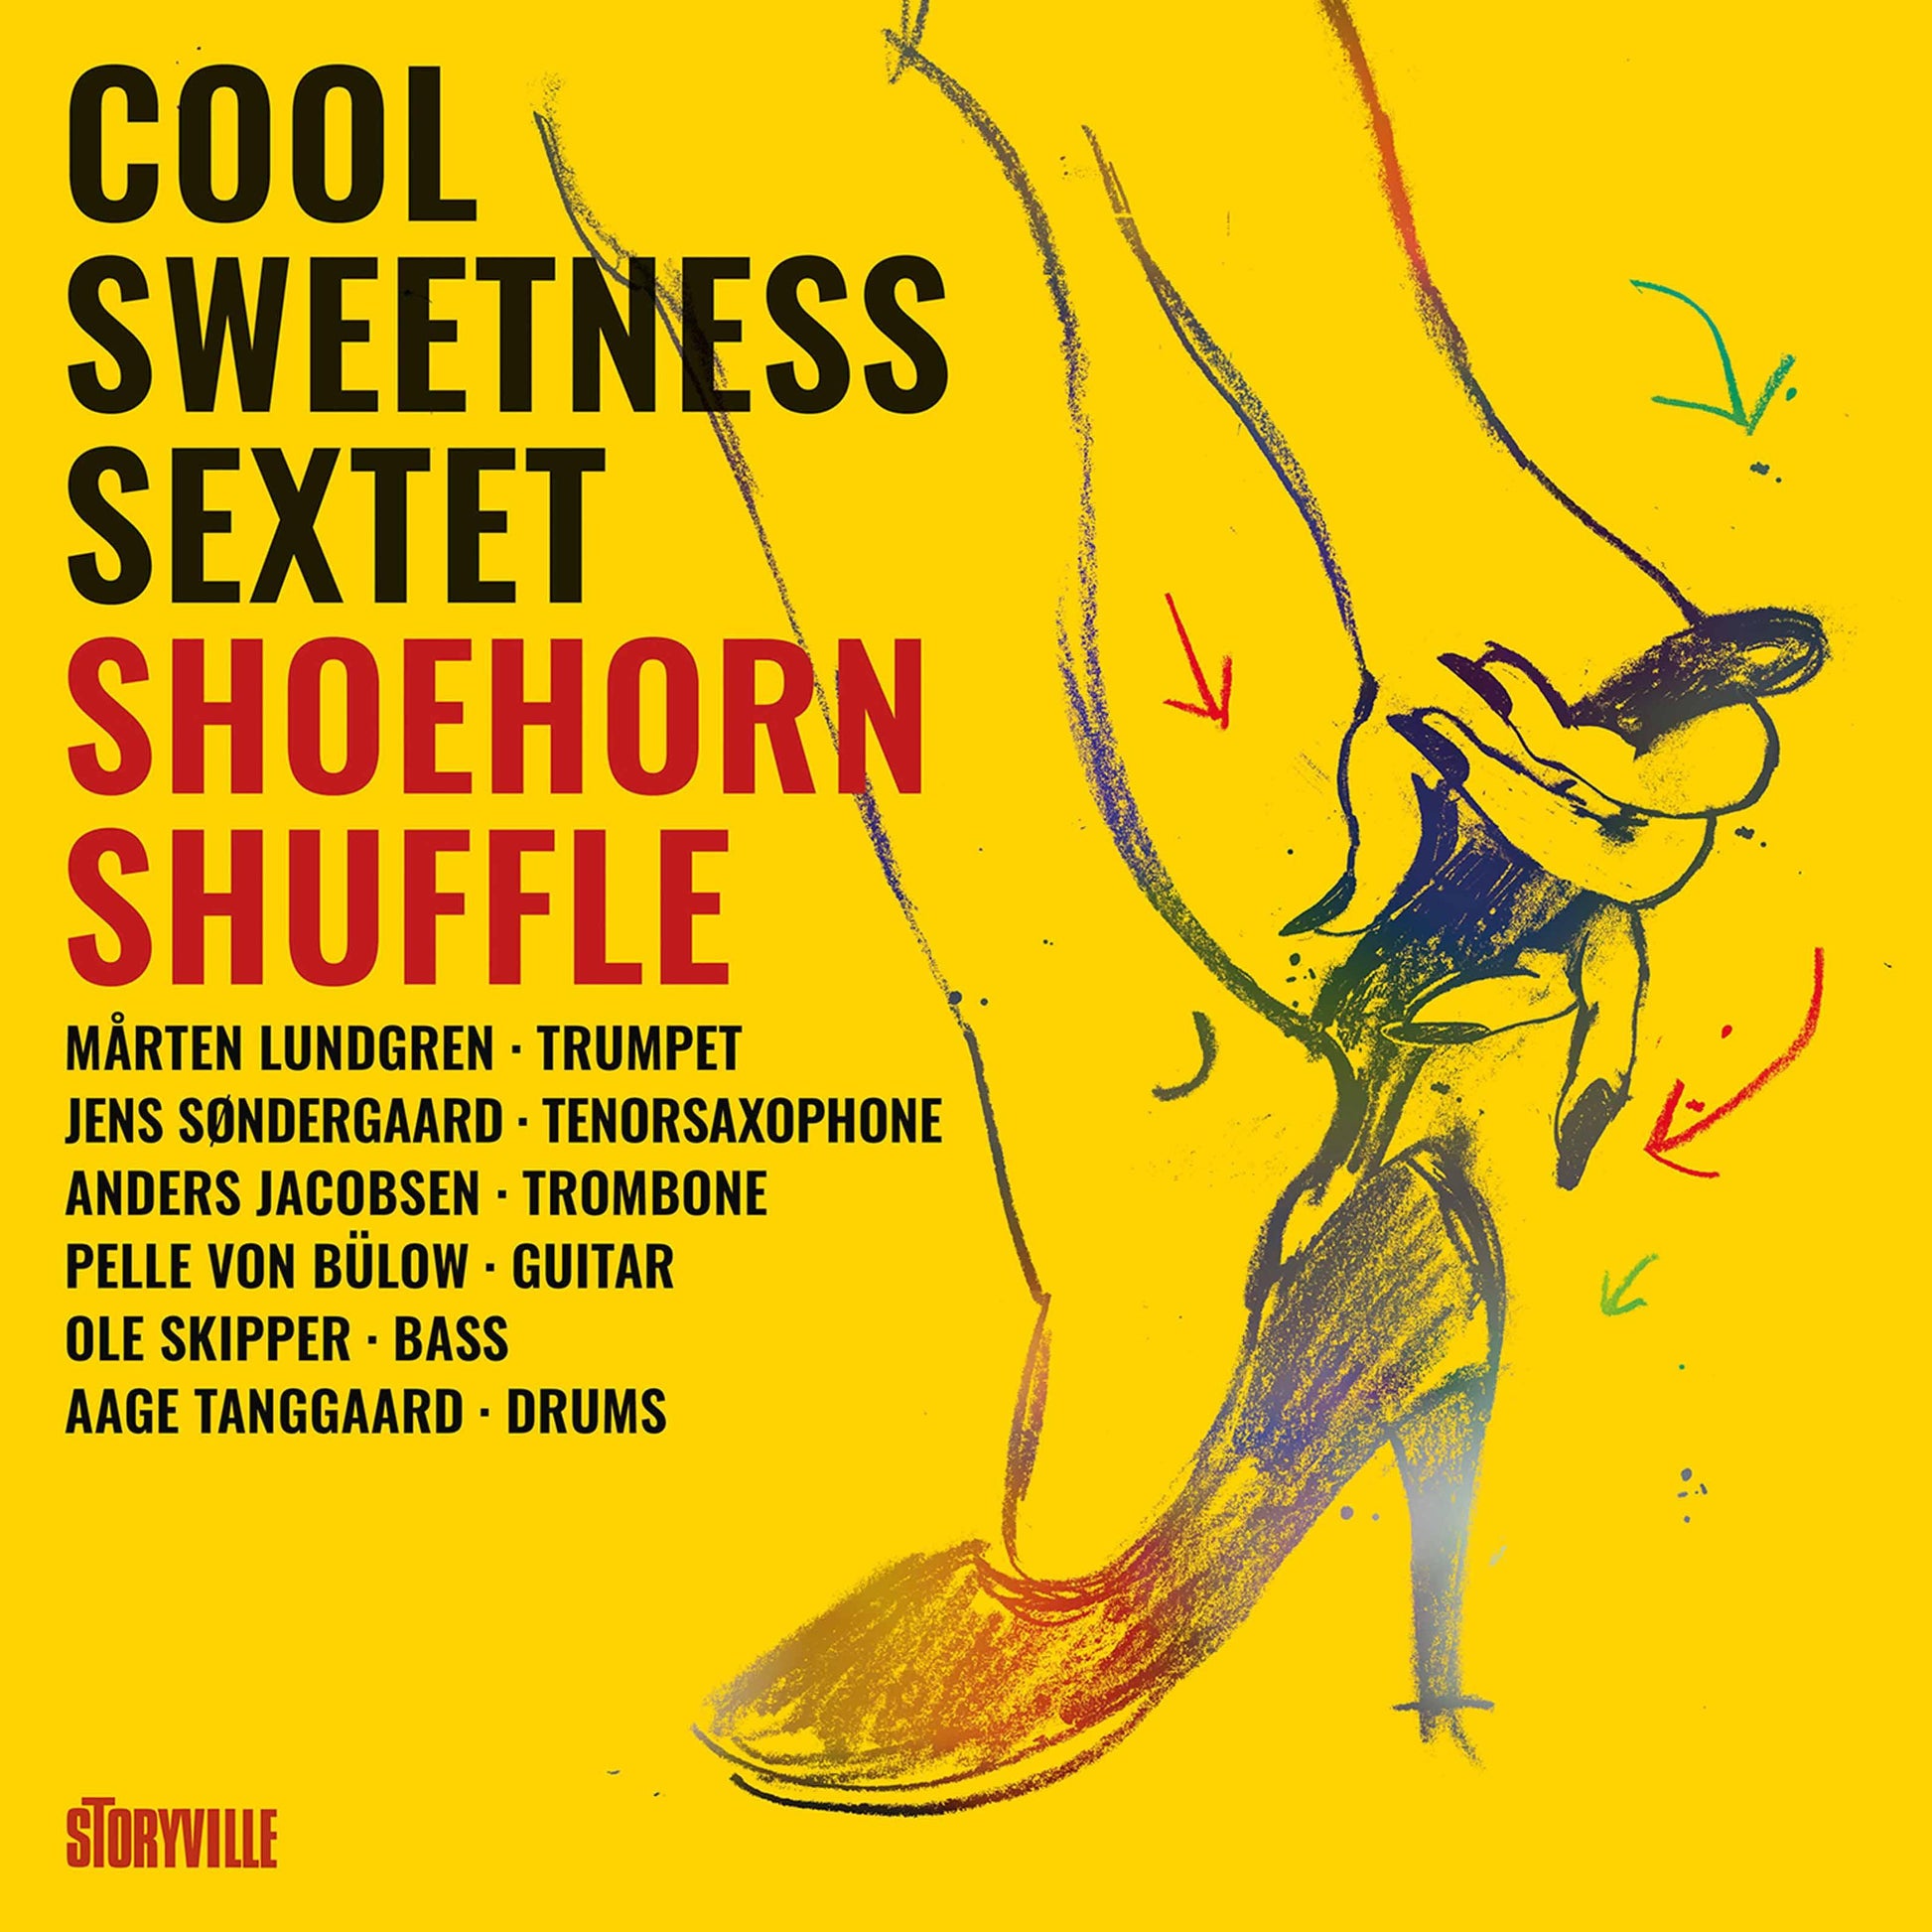 Shoehorn Shuffle - ArkivMusic